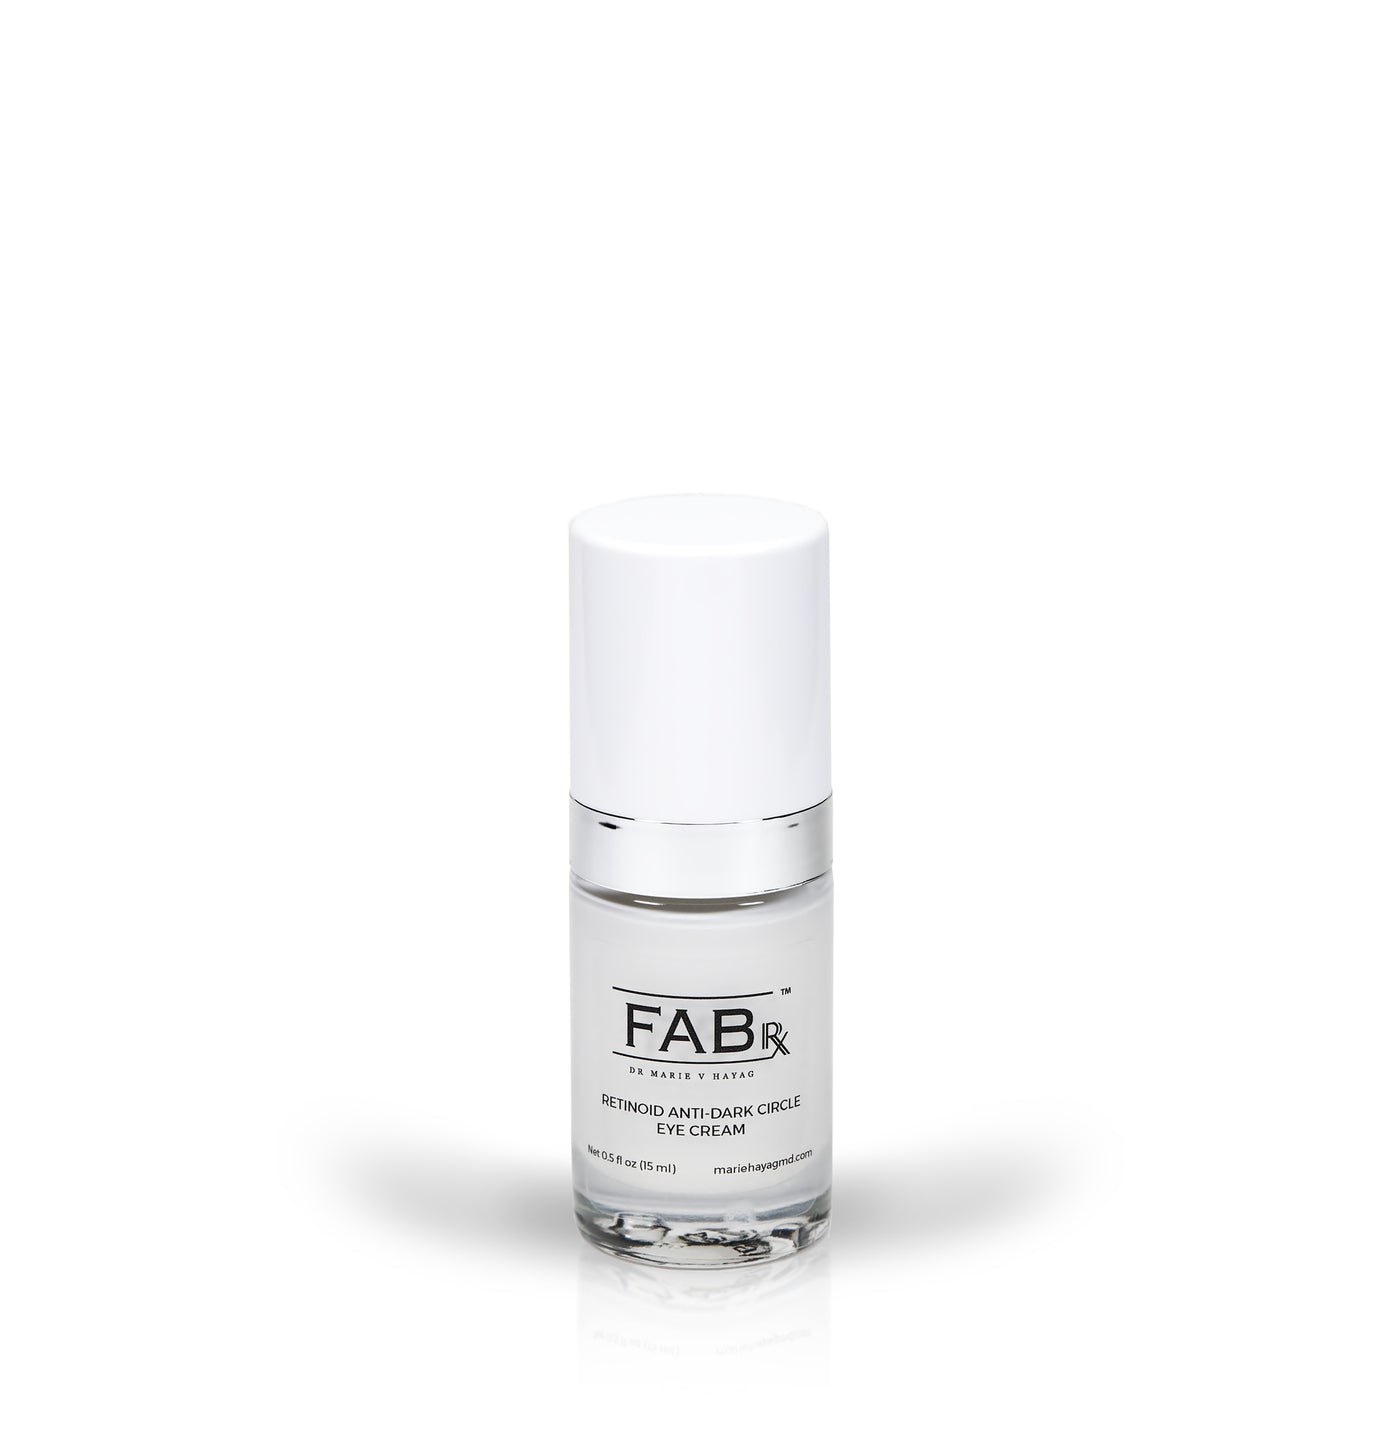 FABrx Retinoid Anti-Dark Circle Eye Cream